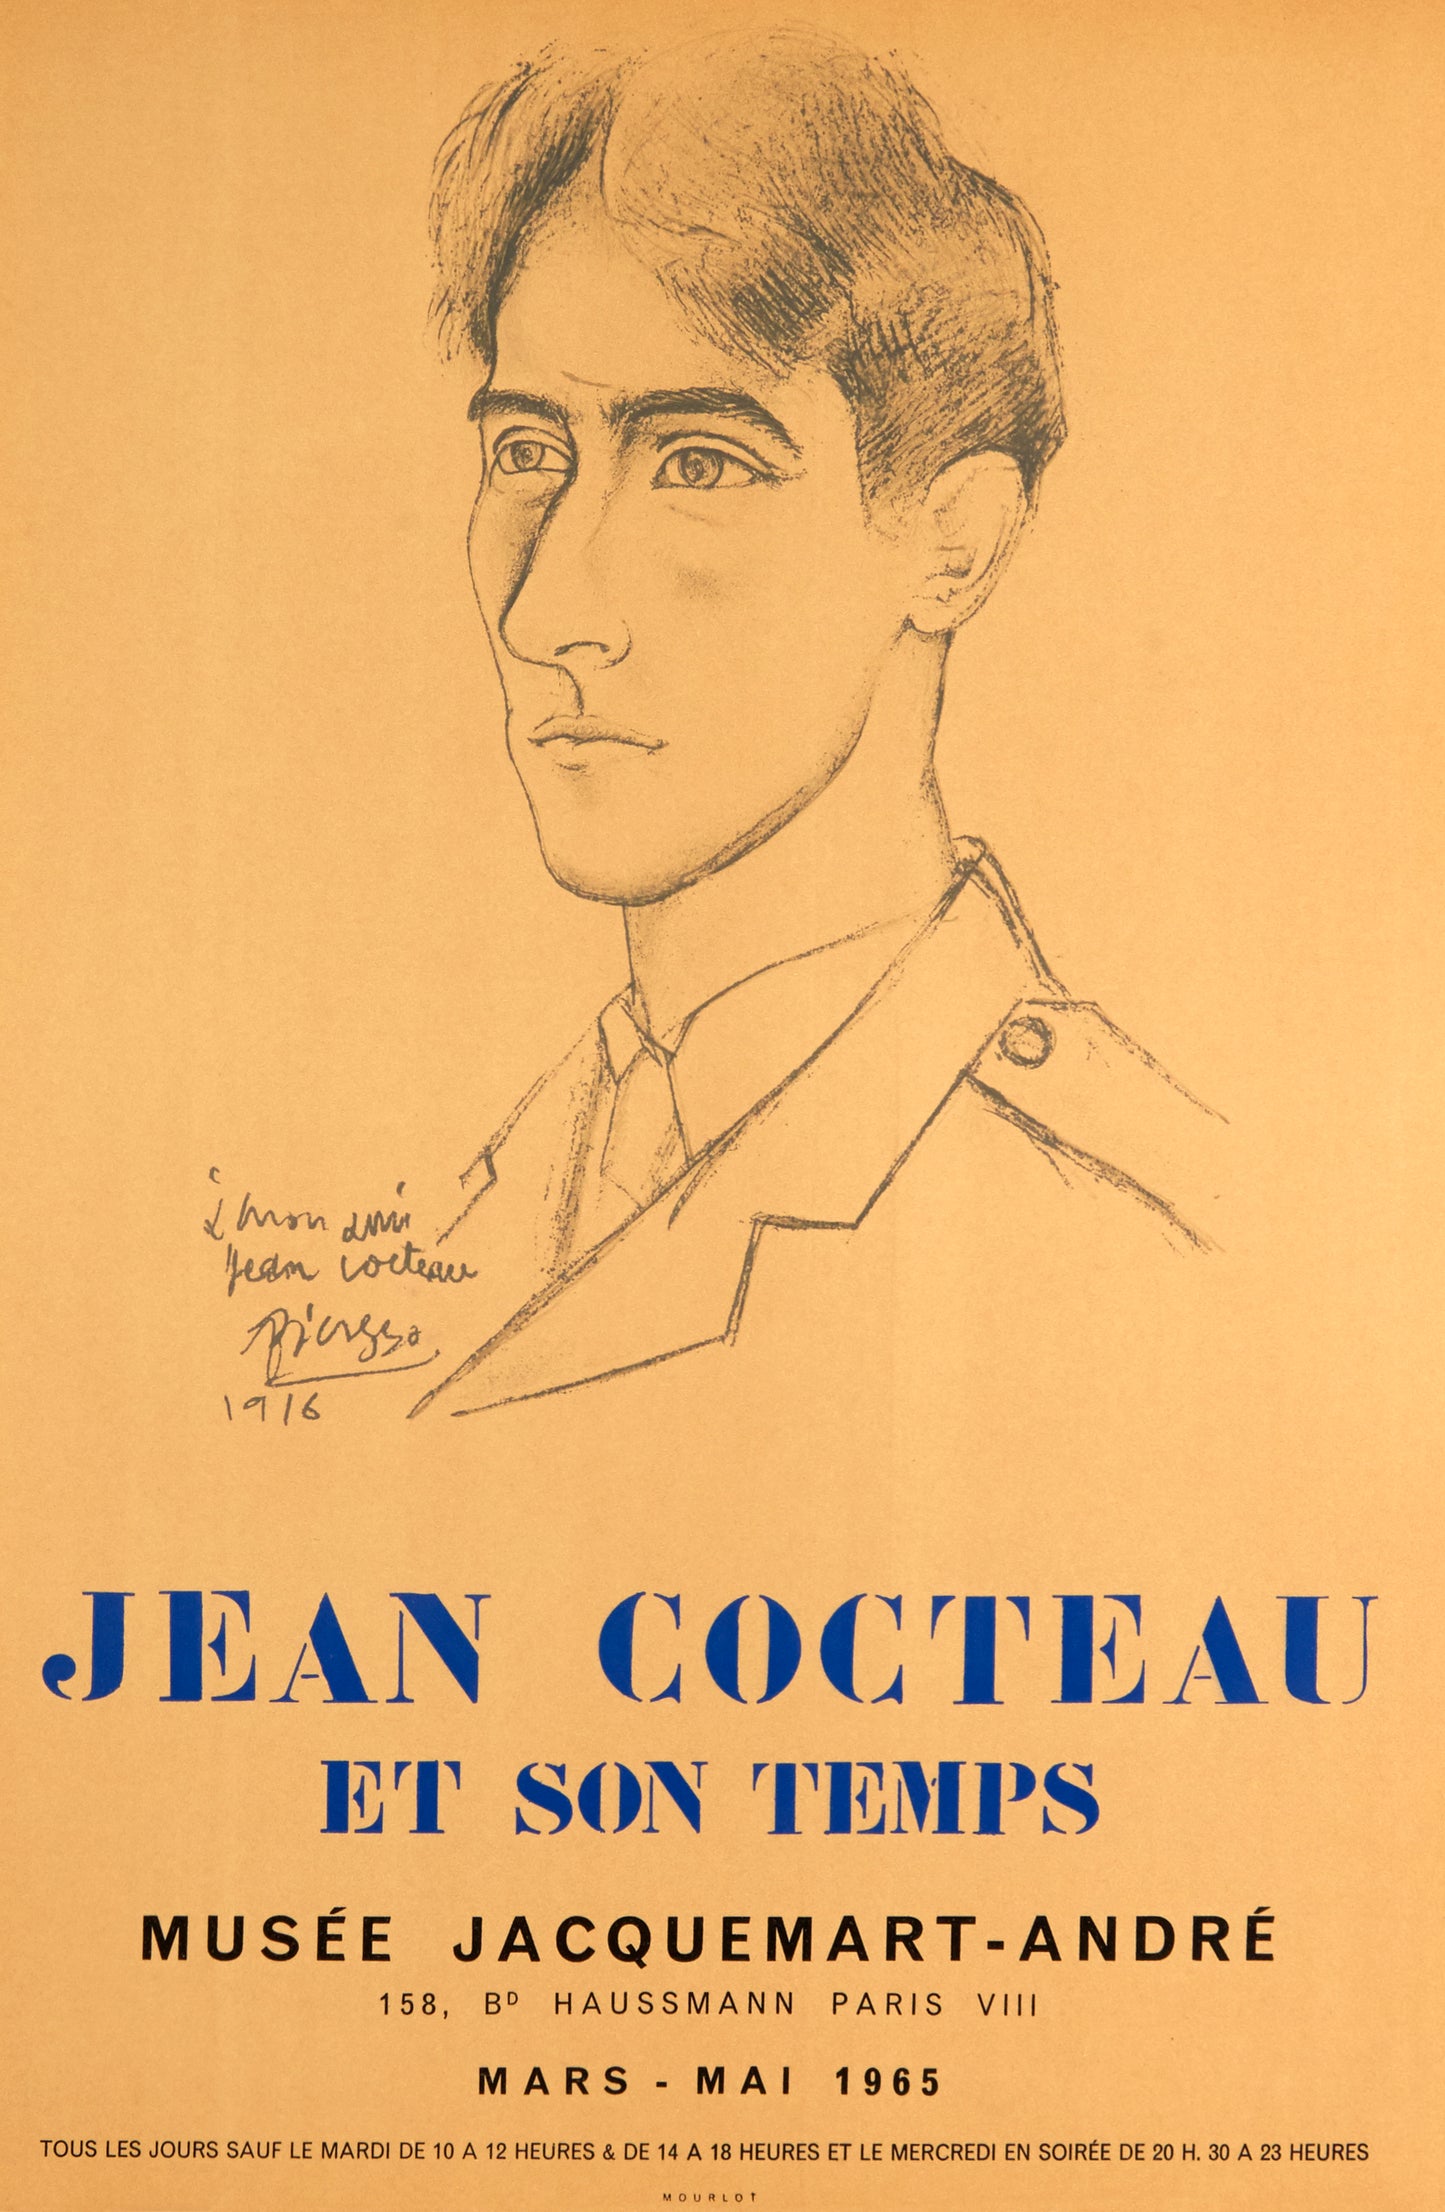 Jean Cocteau et son temps (after) Pablo Picasso, 1965 - Mourlot Editions - Fine_Art - Poster - Lithograph - Wall Art - Vintage - Prints - Original